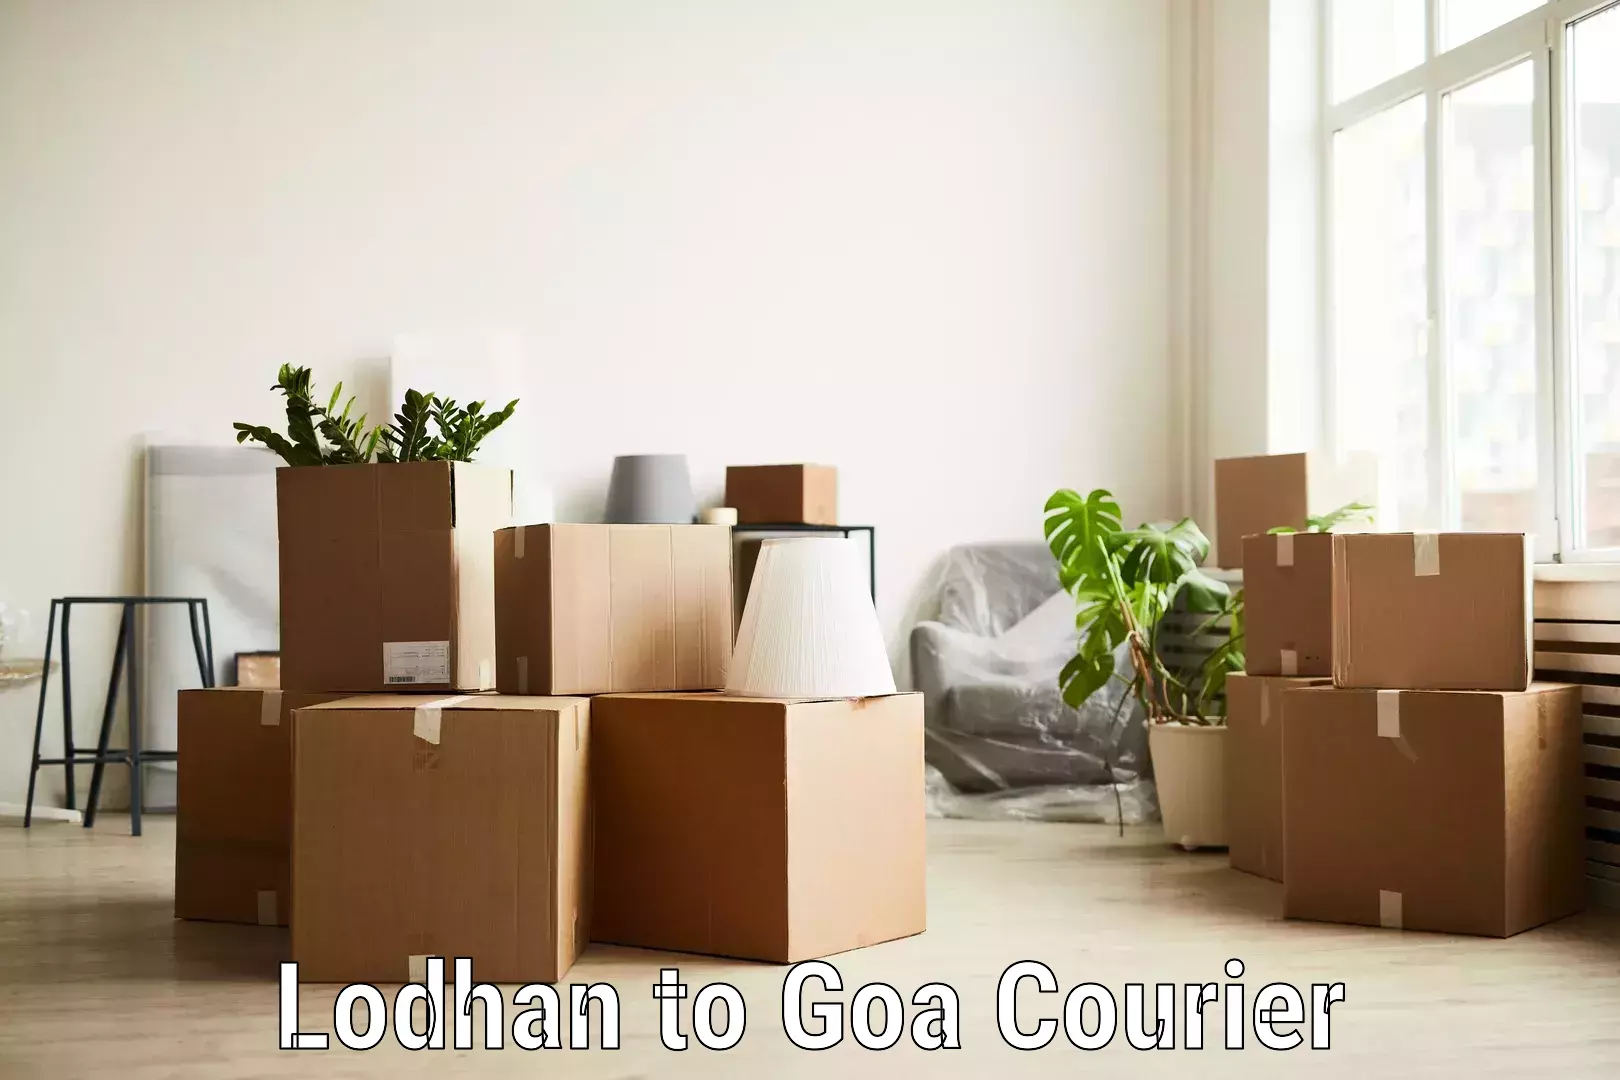 Custom logistics solutions Lodhan to IIT Goa